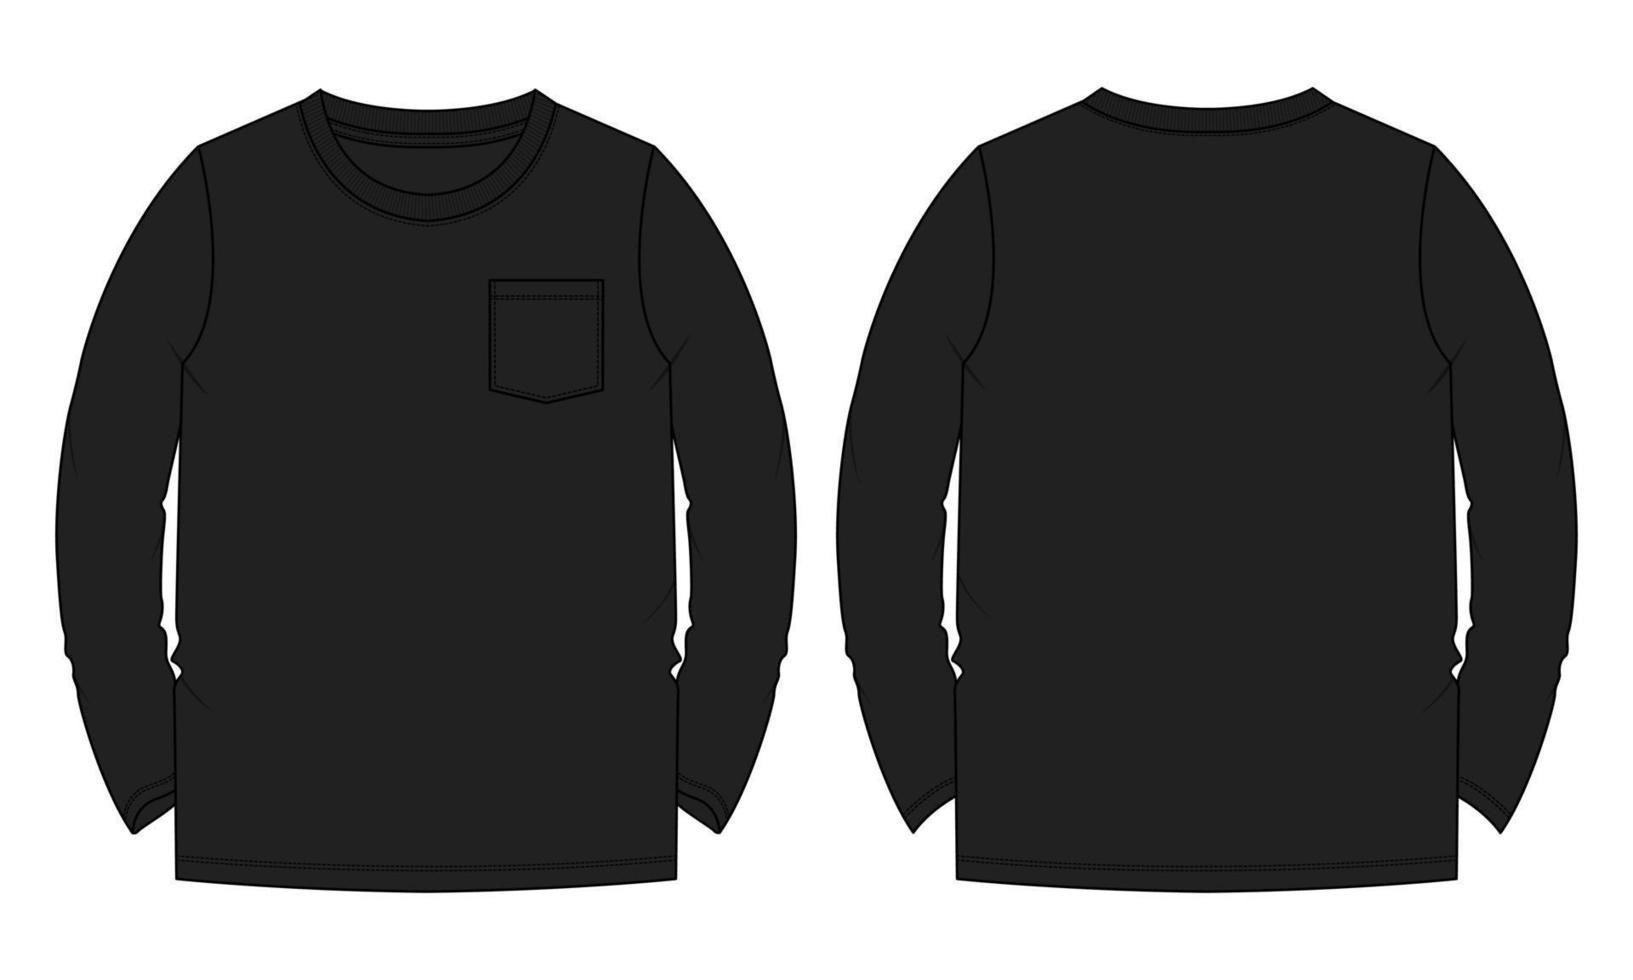 camiseta de manga longa técnica de moda desenho plano ilustração vetorial modelo de cor preta vetor